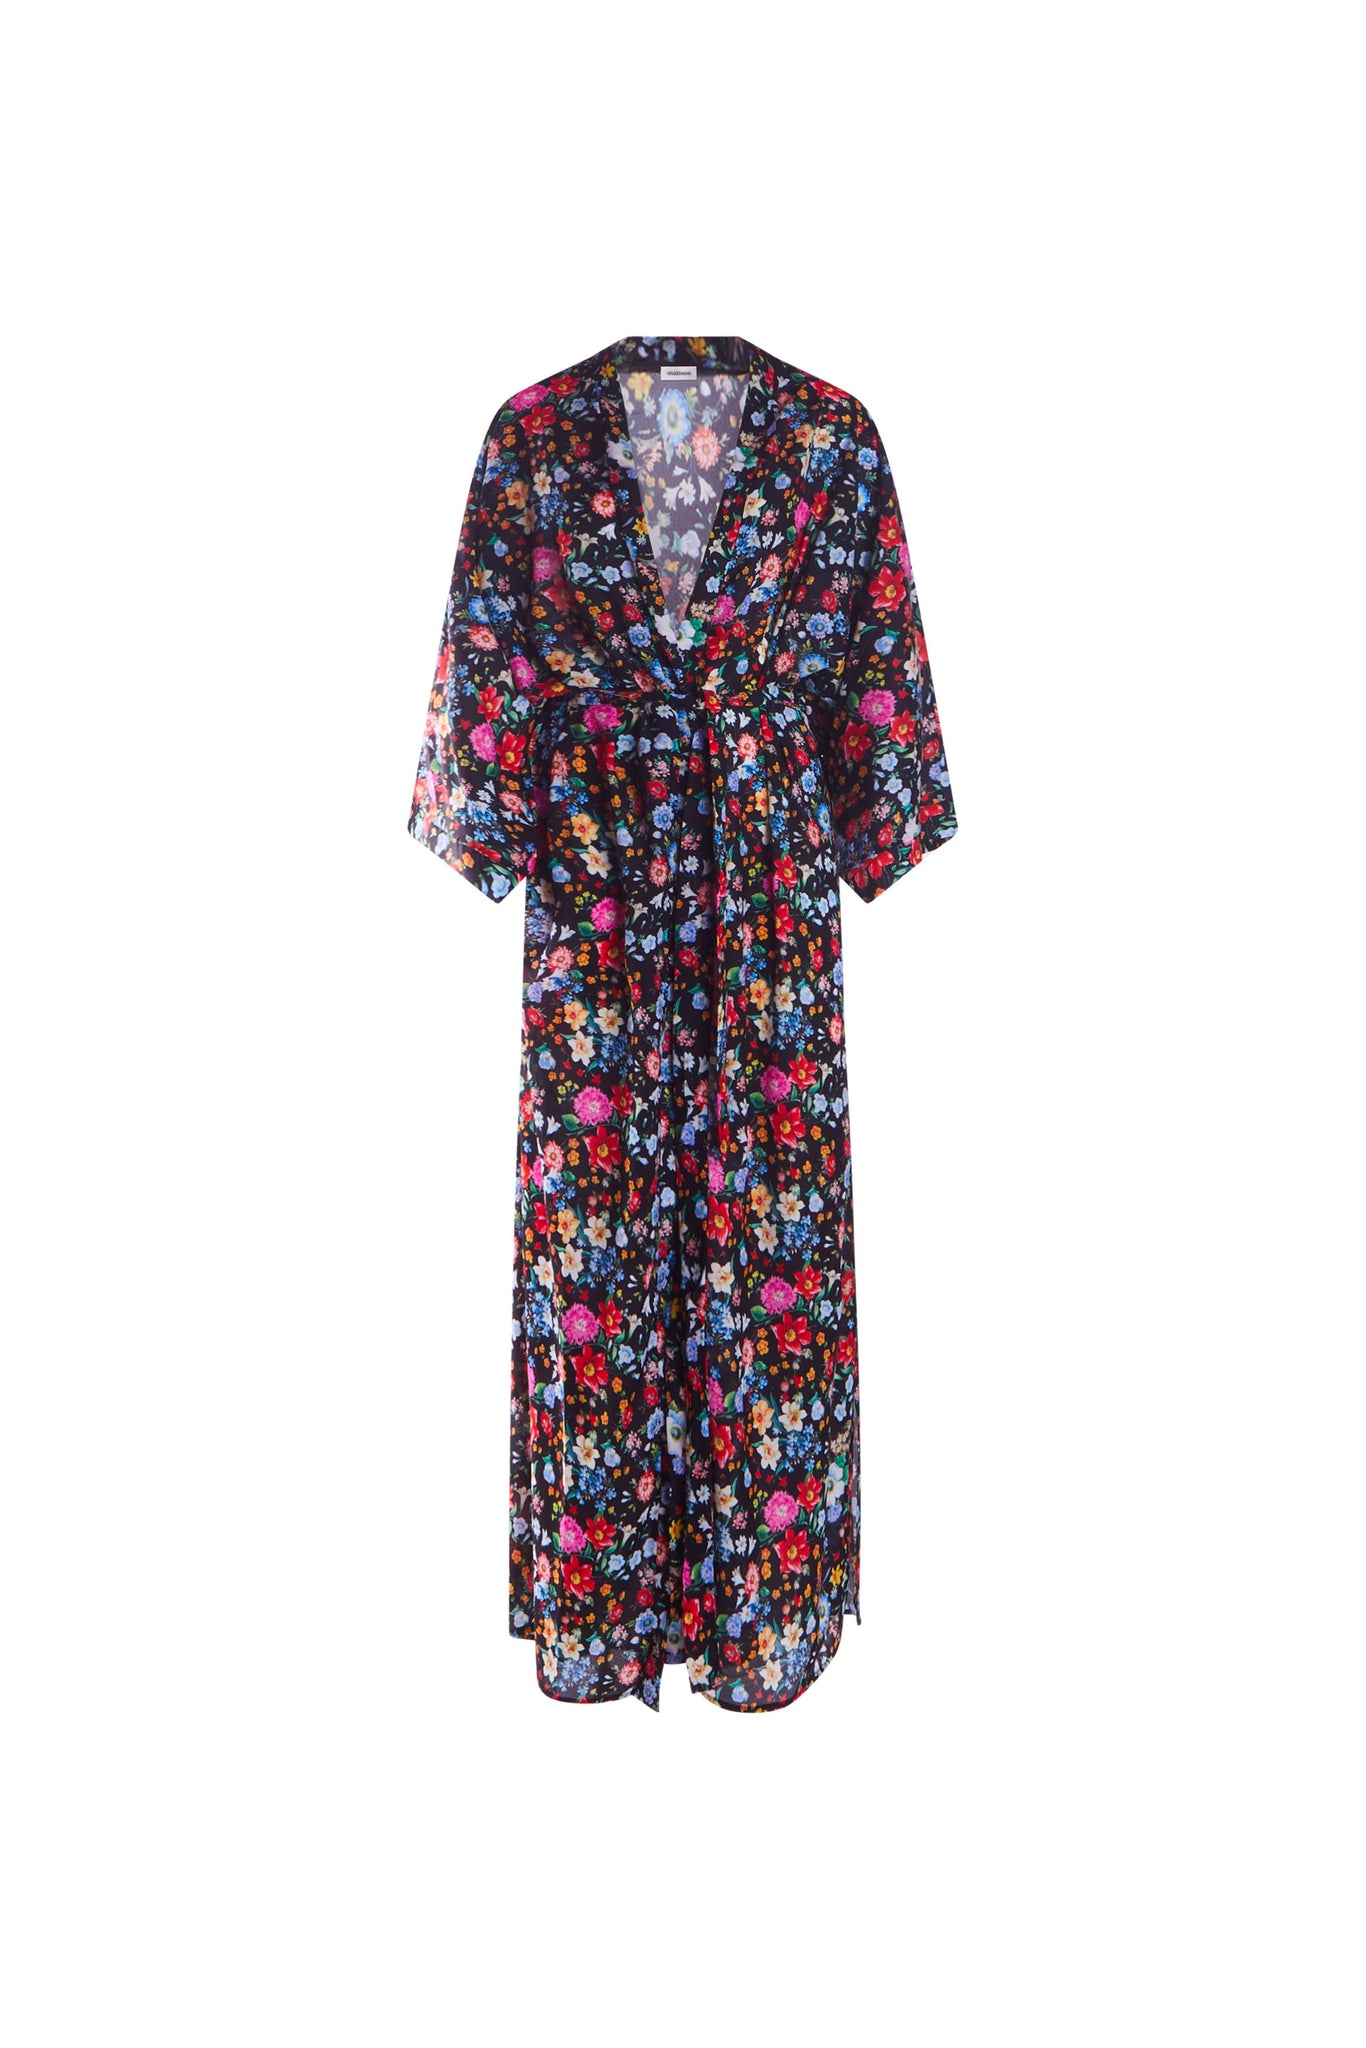 Grabar frío ensillar Patterned Kimono / Black